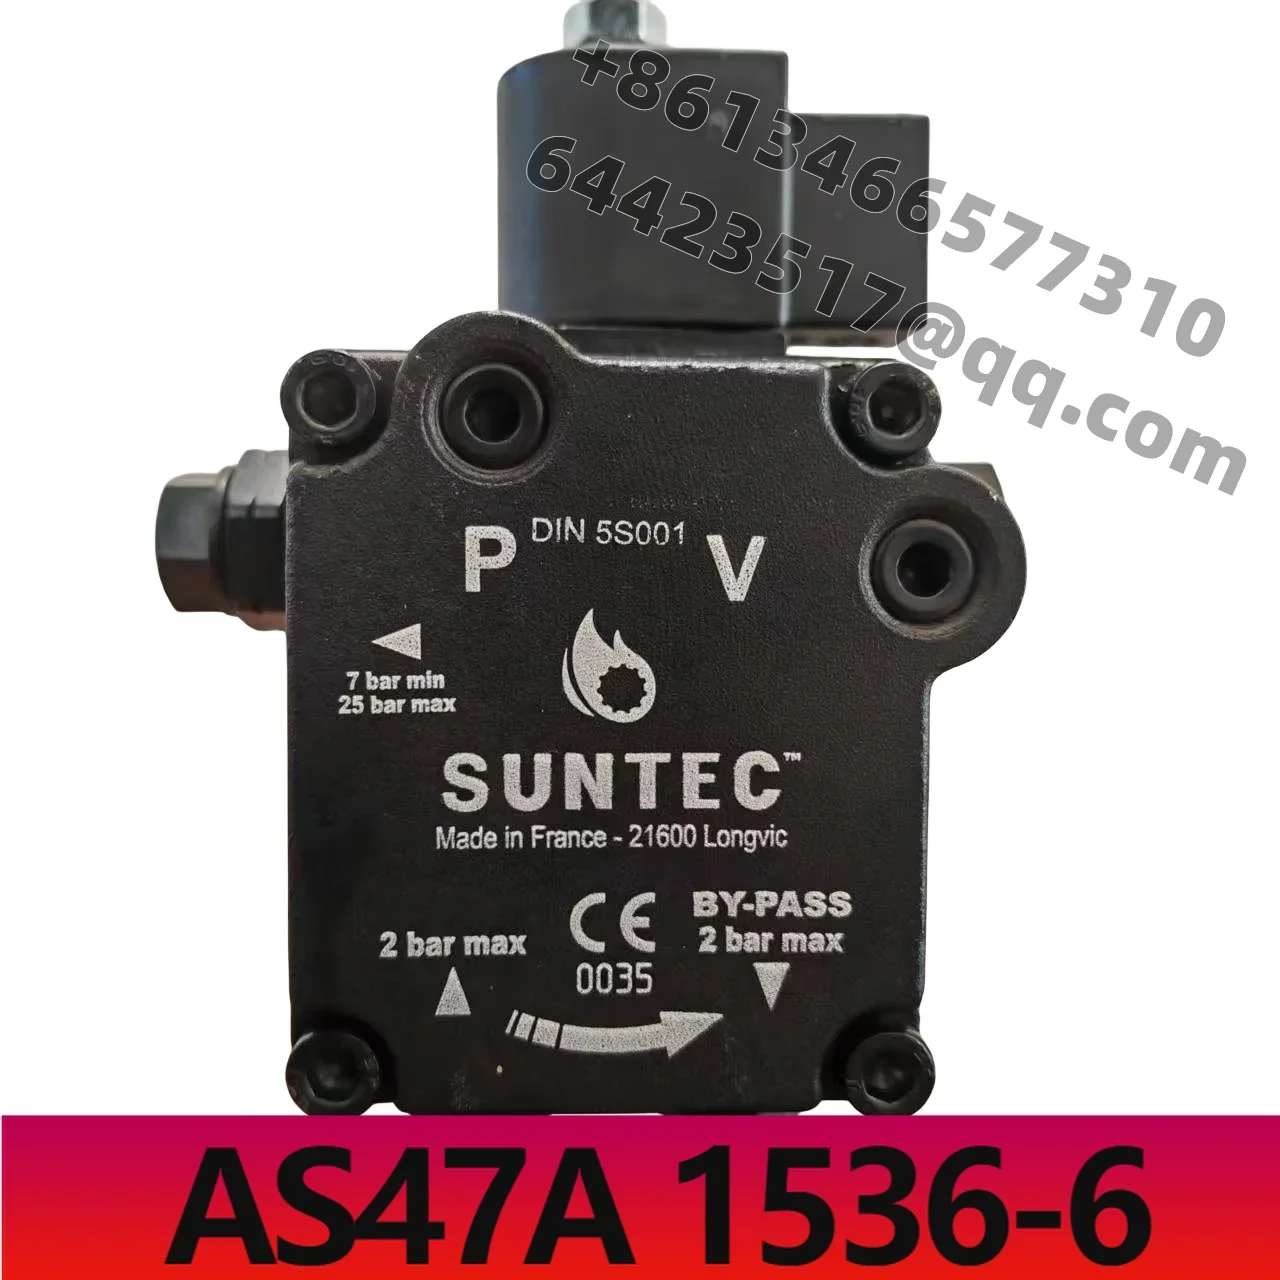 

AS47A 1536-6 SUNTEC Oil Pump for Boiler Burner